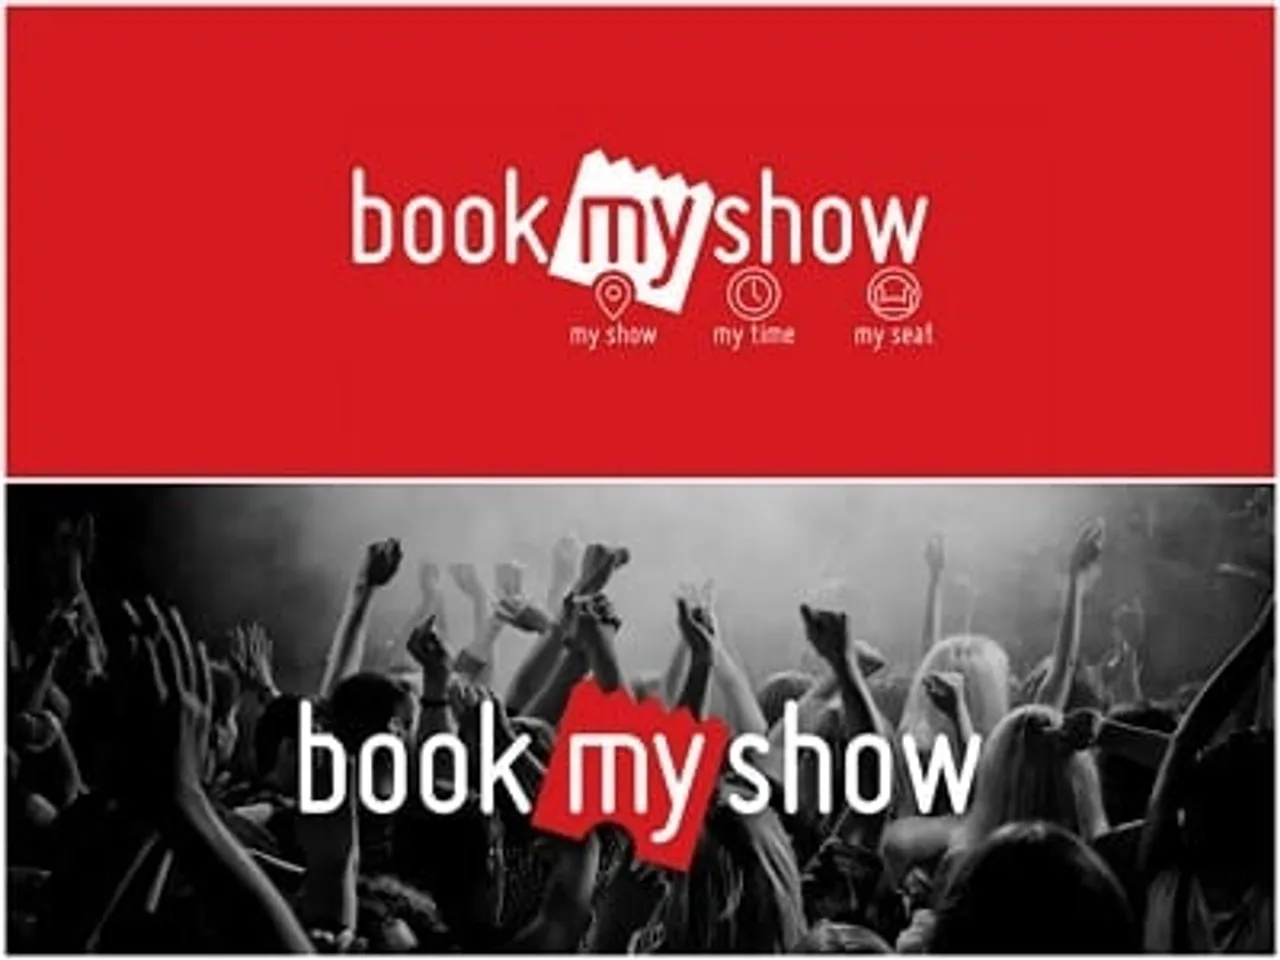 BookMyShow announces its association with SPI Cinemas